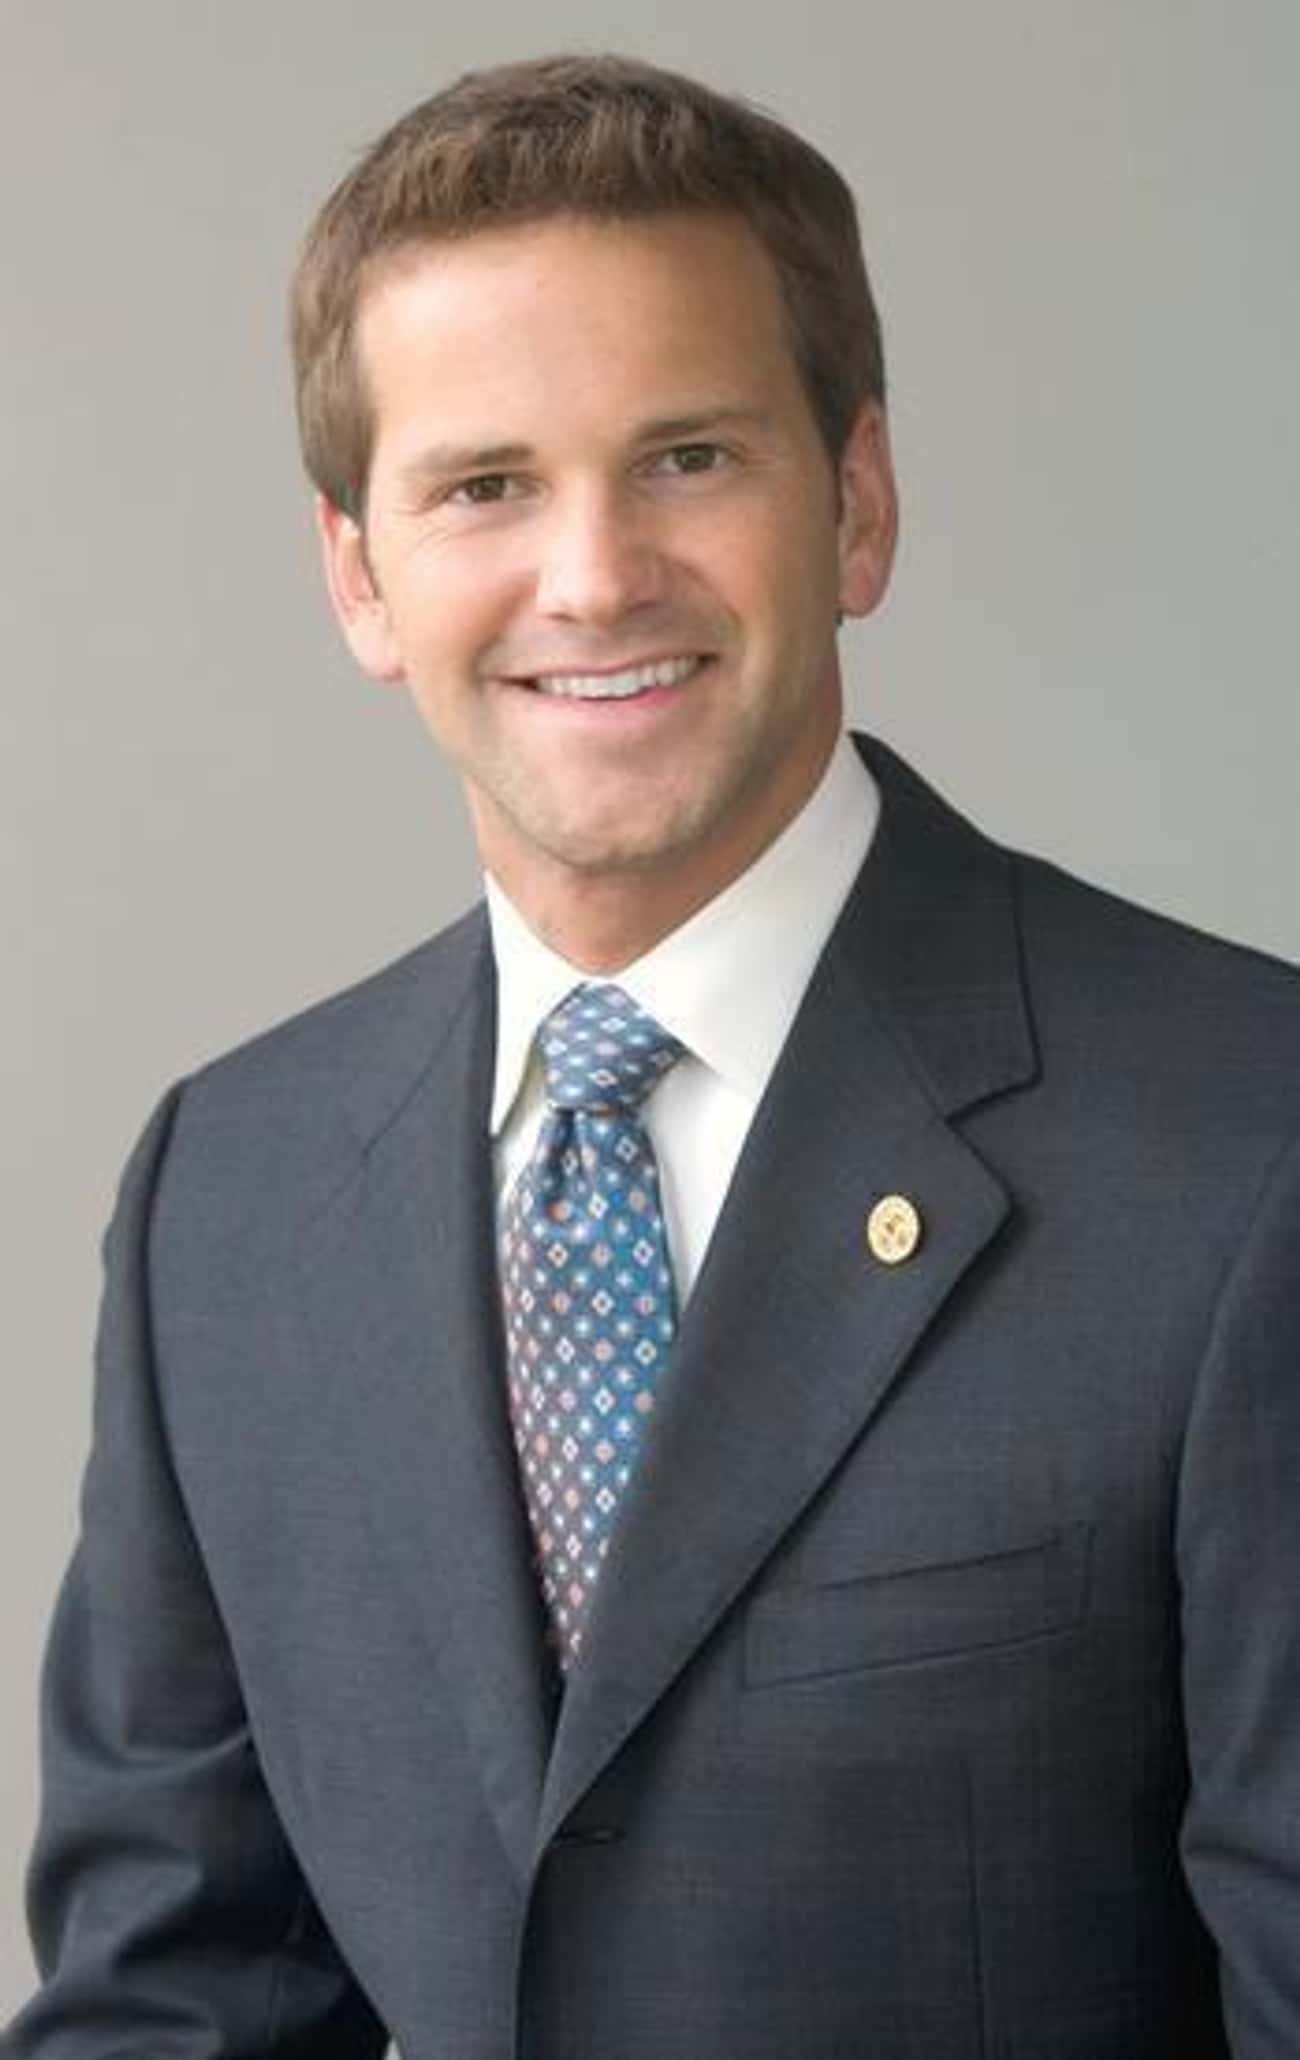 Aaron Schock, Former United States Congressman